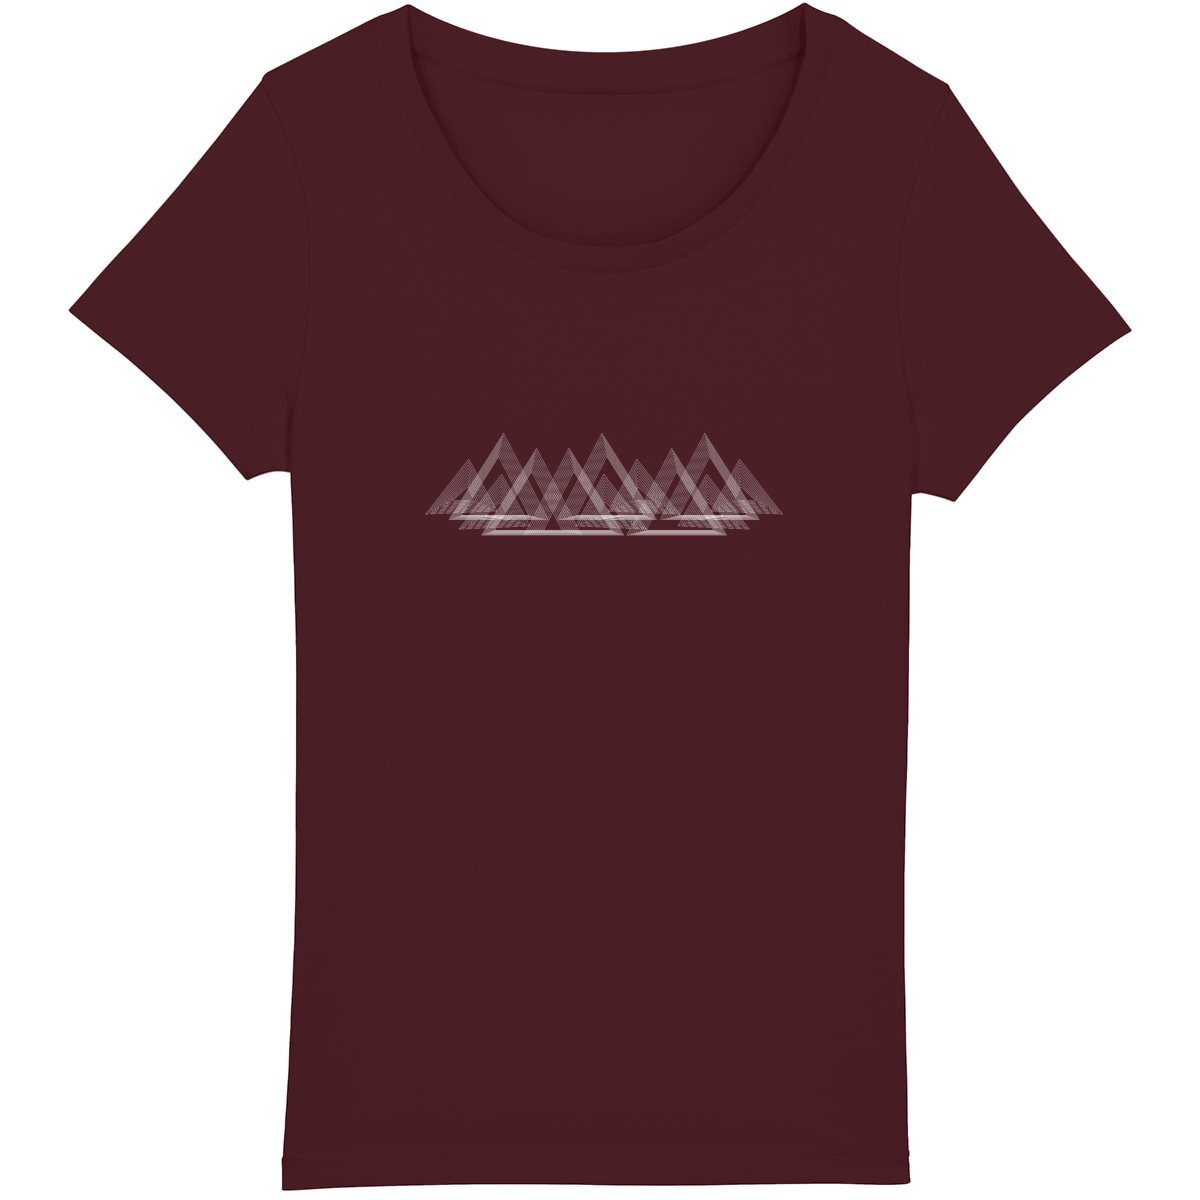 Montagnes stylisées minimalistes sur t-shirt outdoor responsable